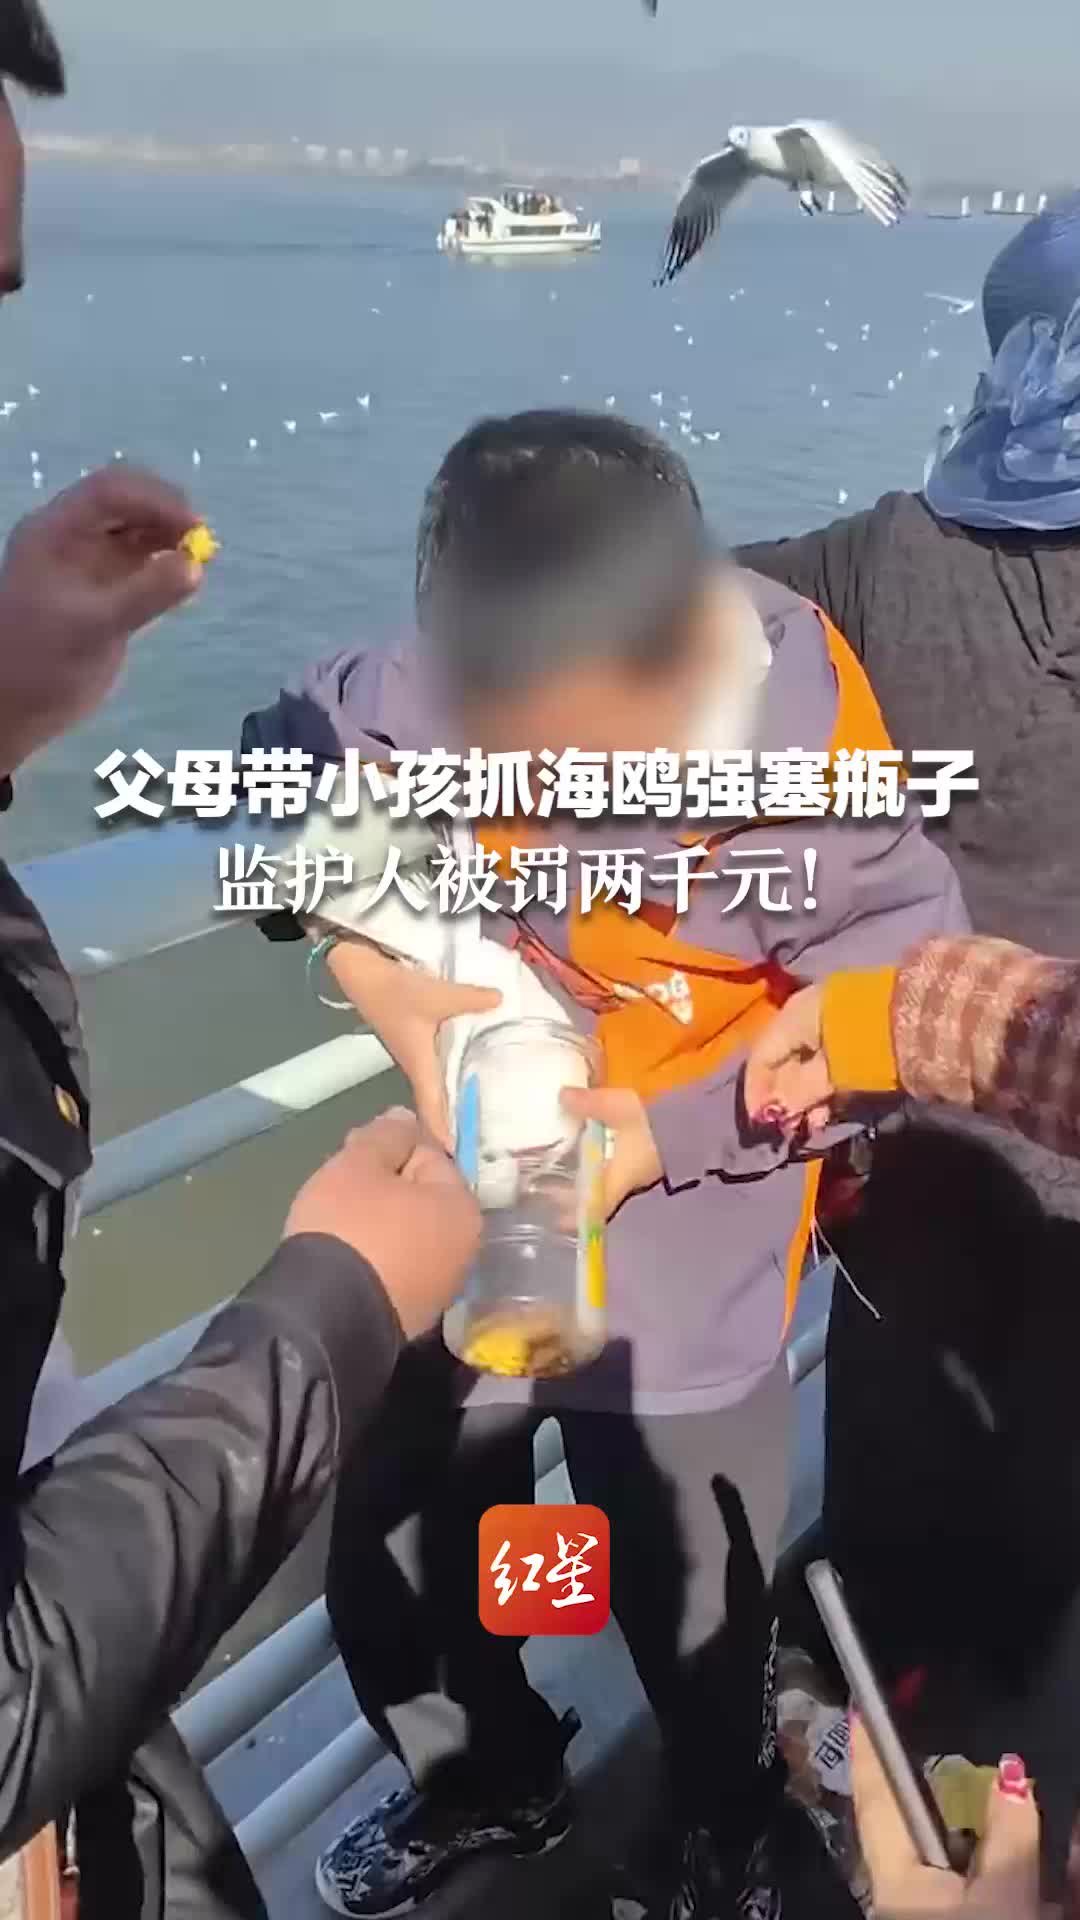 父母带小孩抓海鸥强塞瓶子 监护人被罚两千元